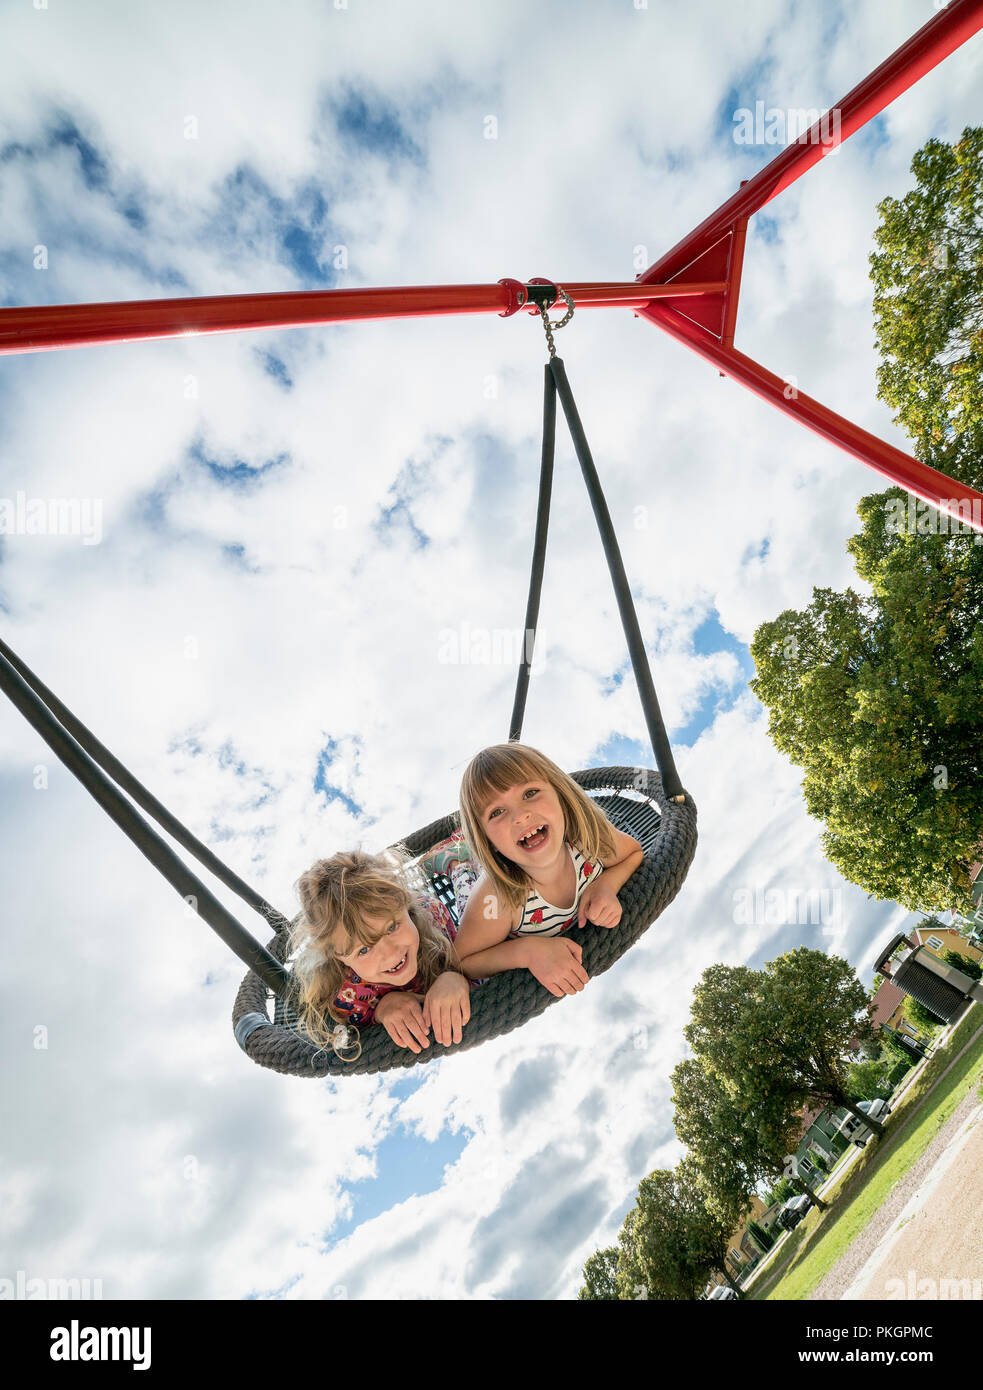 Zwei Junge Mädchen In Einer Schaukel Spaß Und Spielen Auf Einem Spielplatz Stockfotografie Alamy 